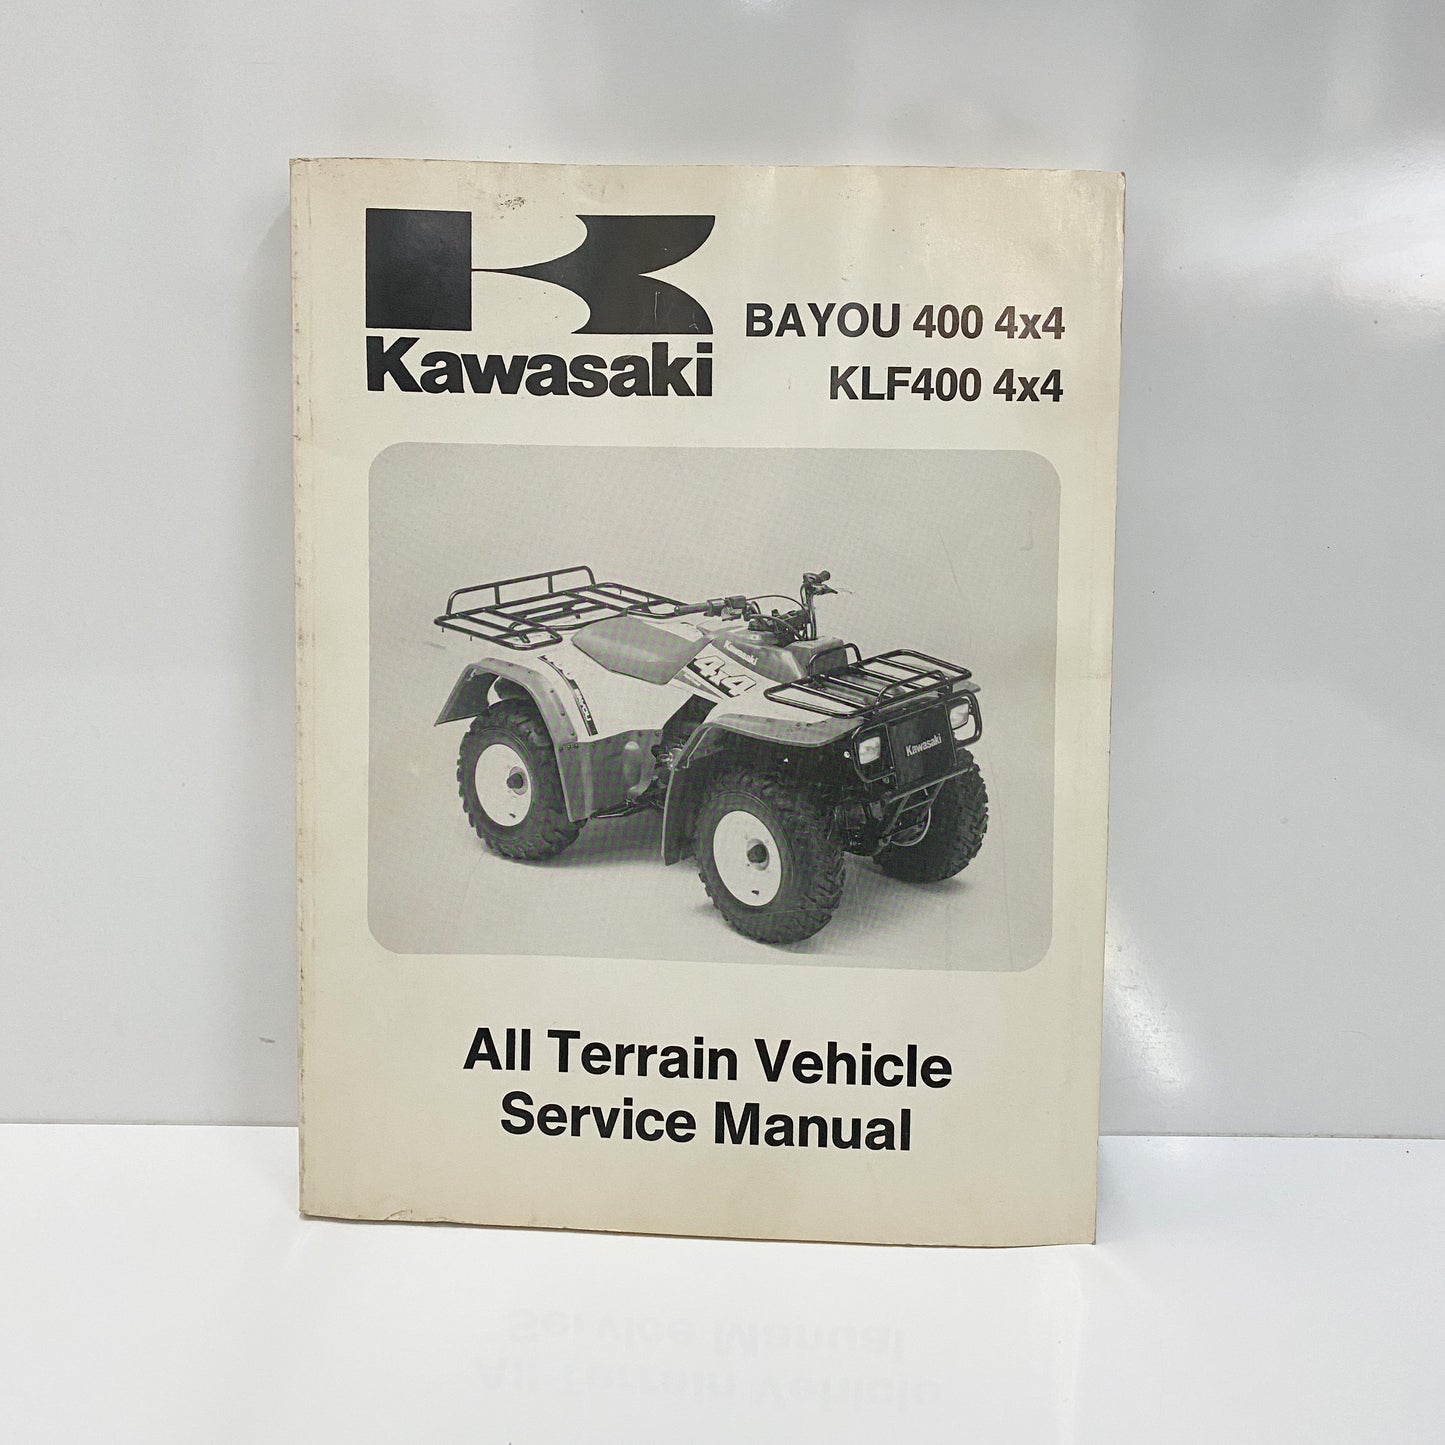 Kawasaki S/M KLF400B 99924-1154-02